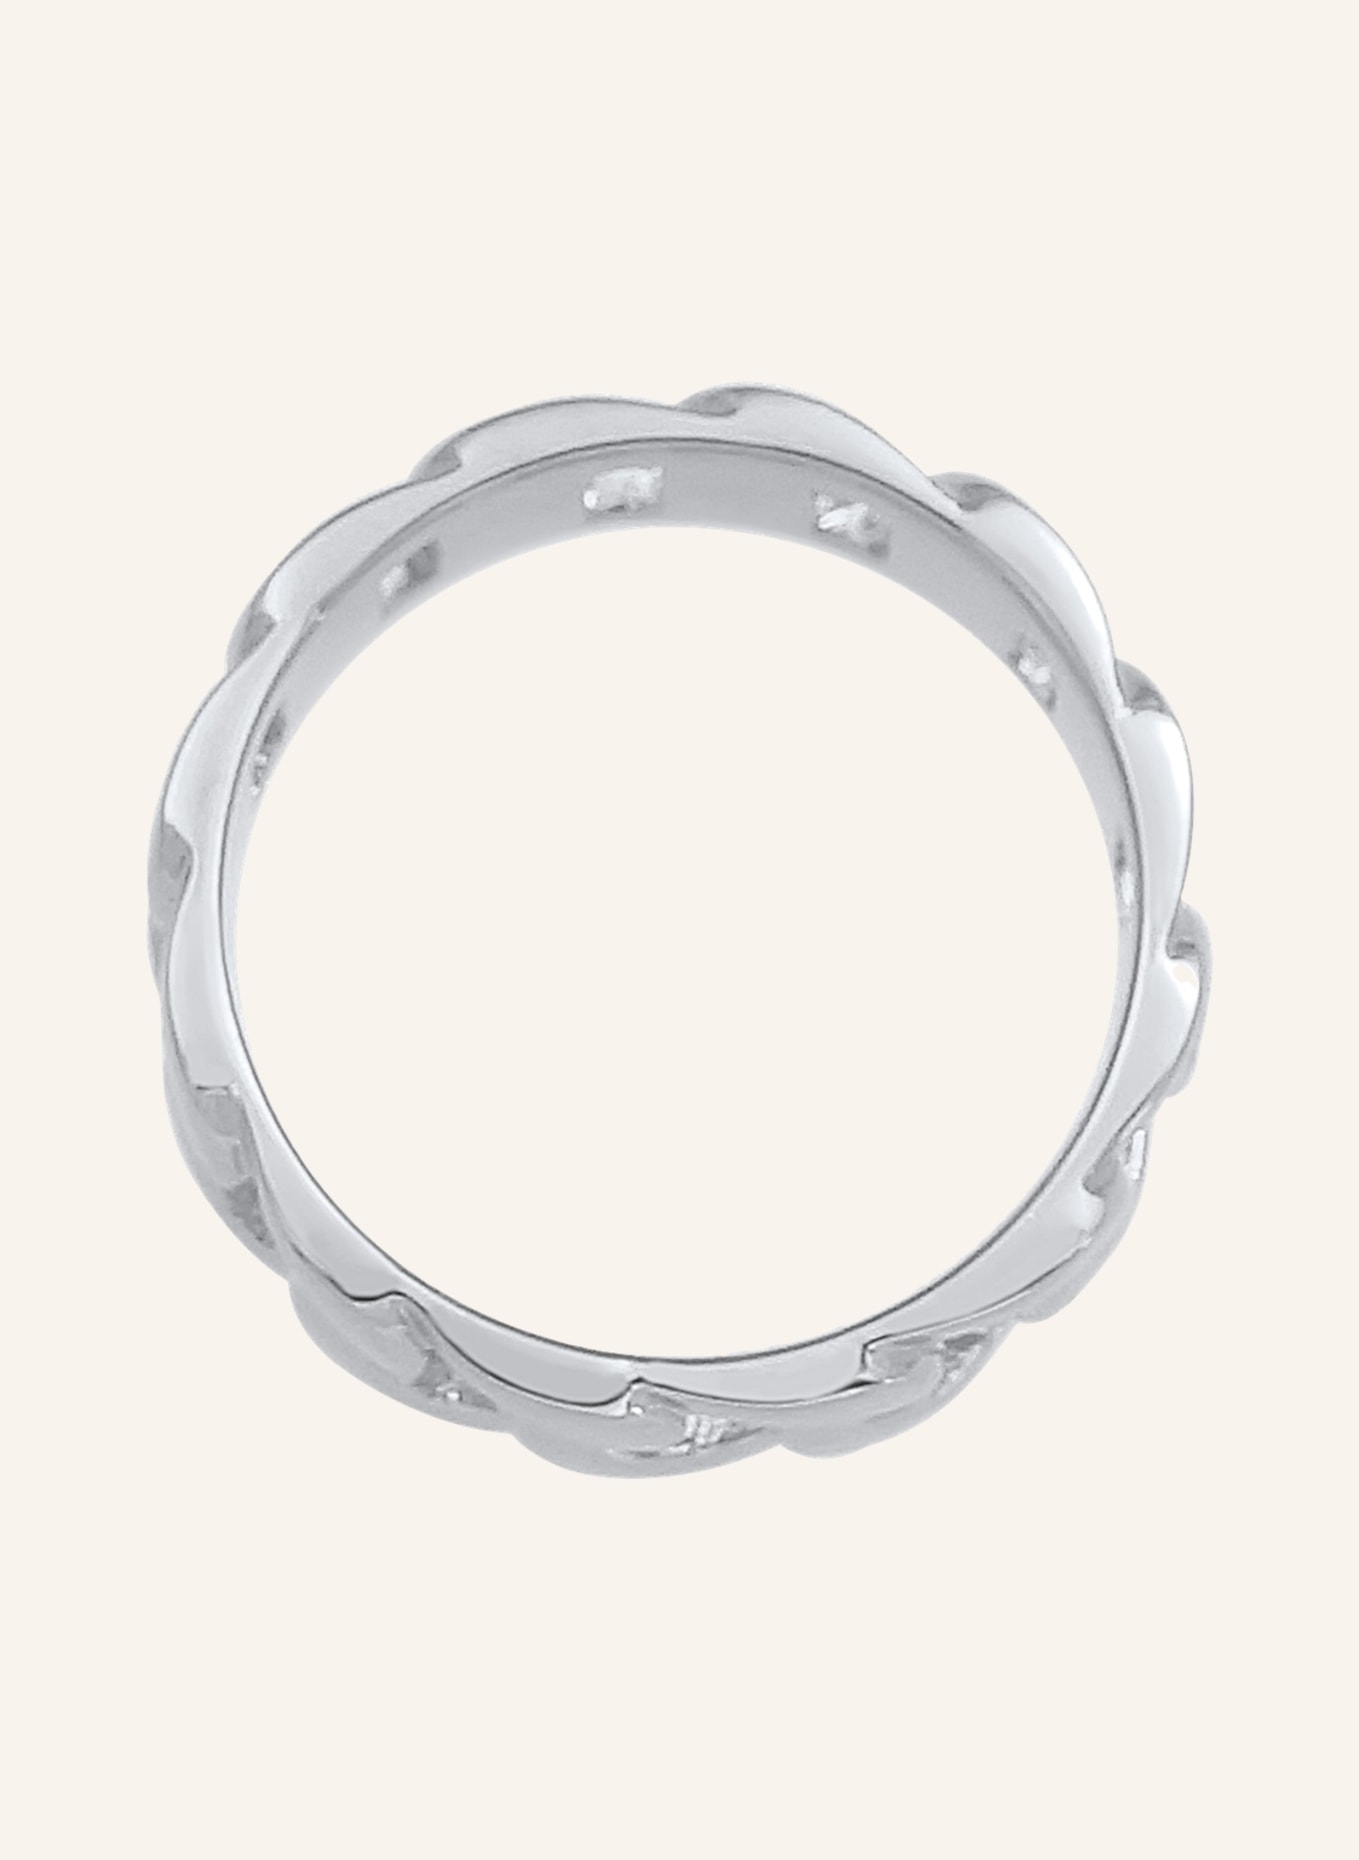 KUZZOI Ring, Farbe: SILBER (Bild 2)